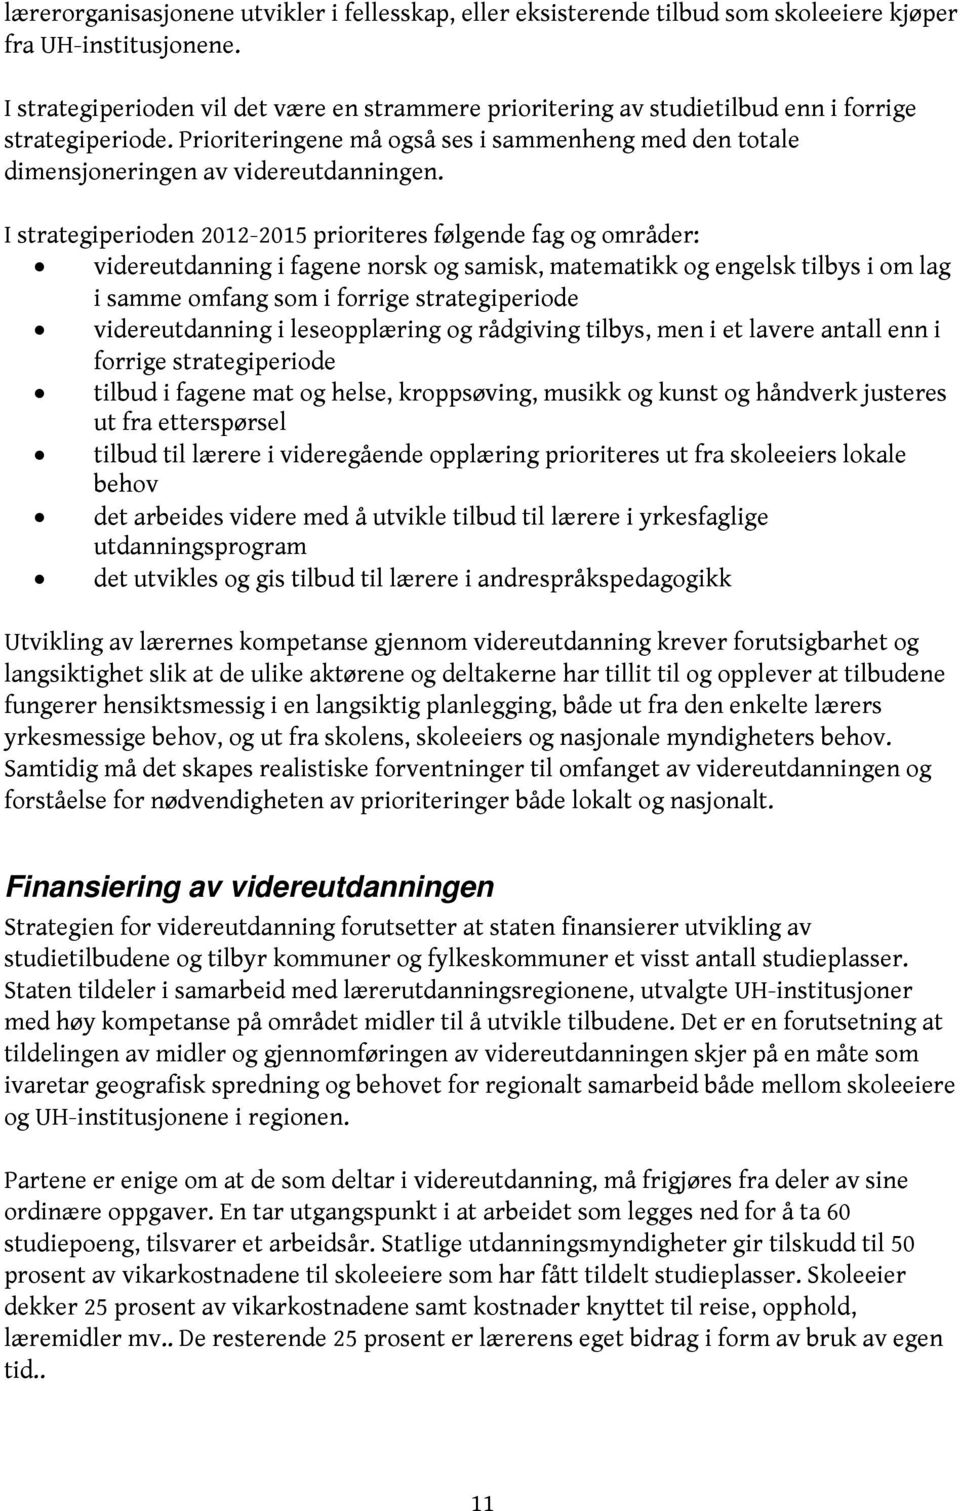 I strategiperioden 2012-2015 prioriteres følgende fag og områder: videreutdanning i fagene norsk og samisk, matematikk og engelsk tilbys i om lag i samme omfang som i forrige strategiperiode